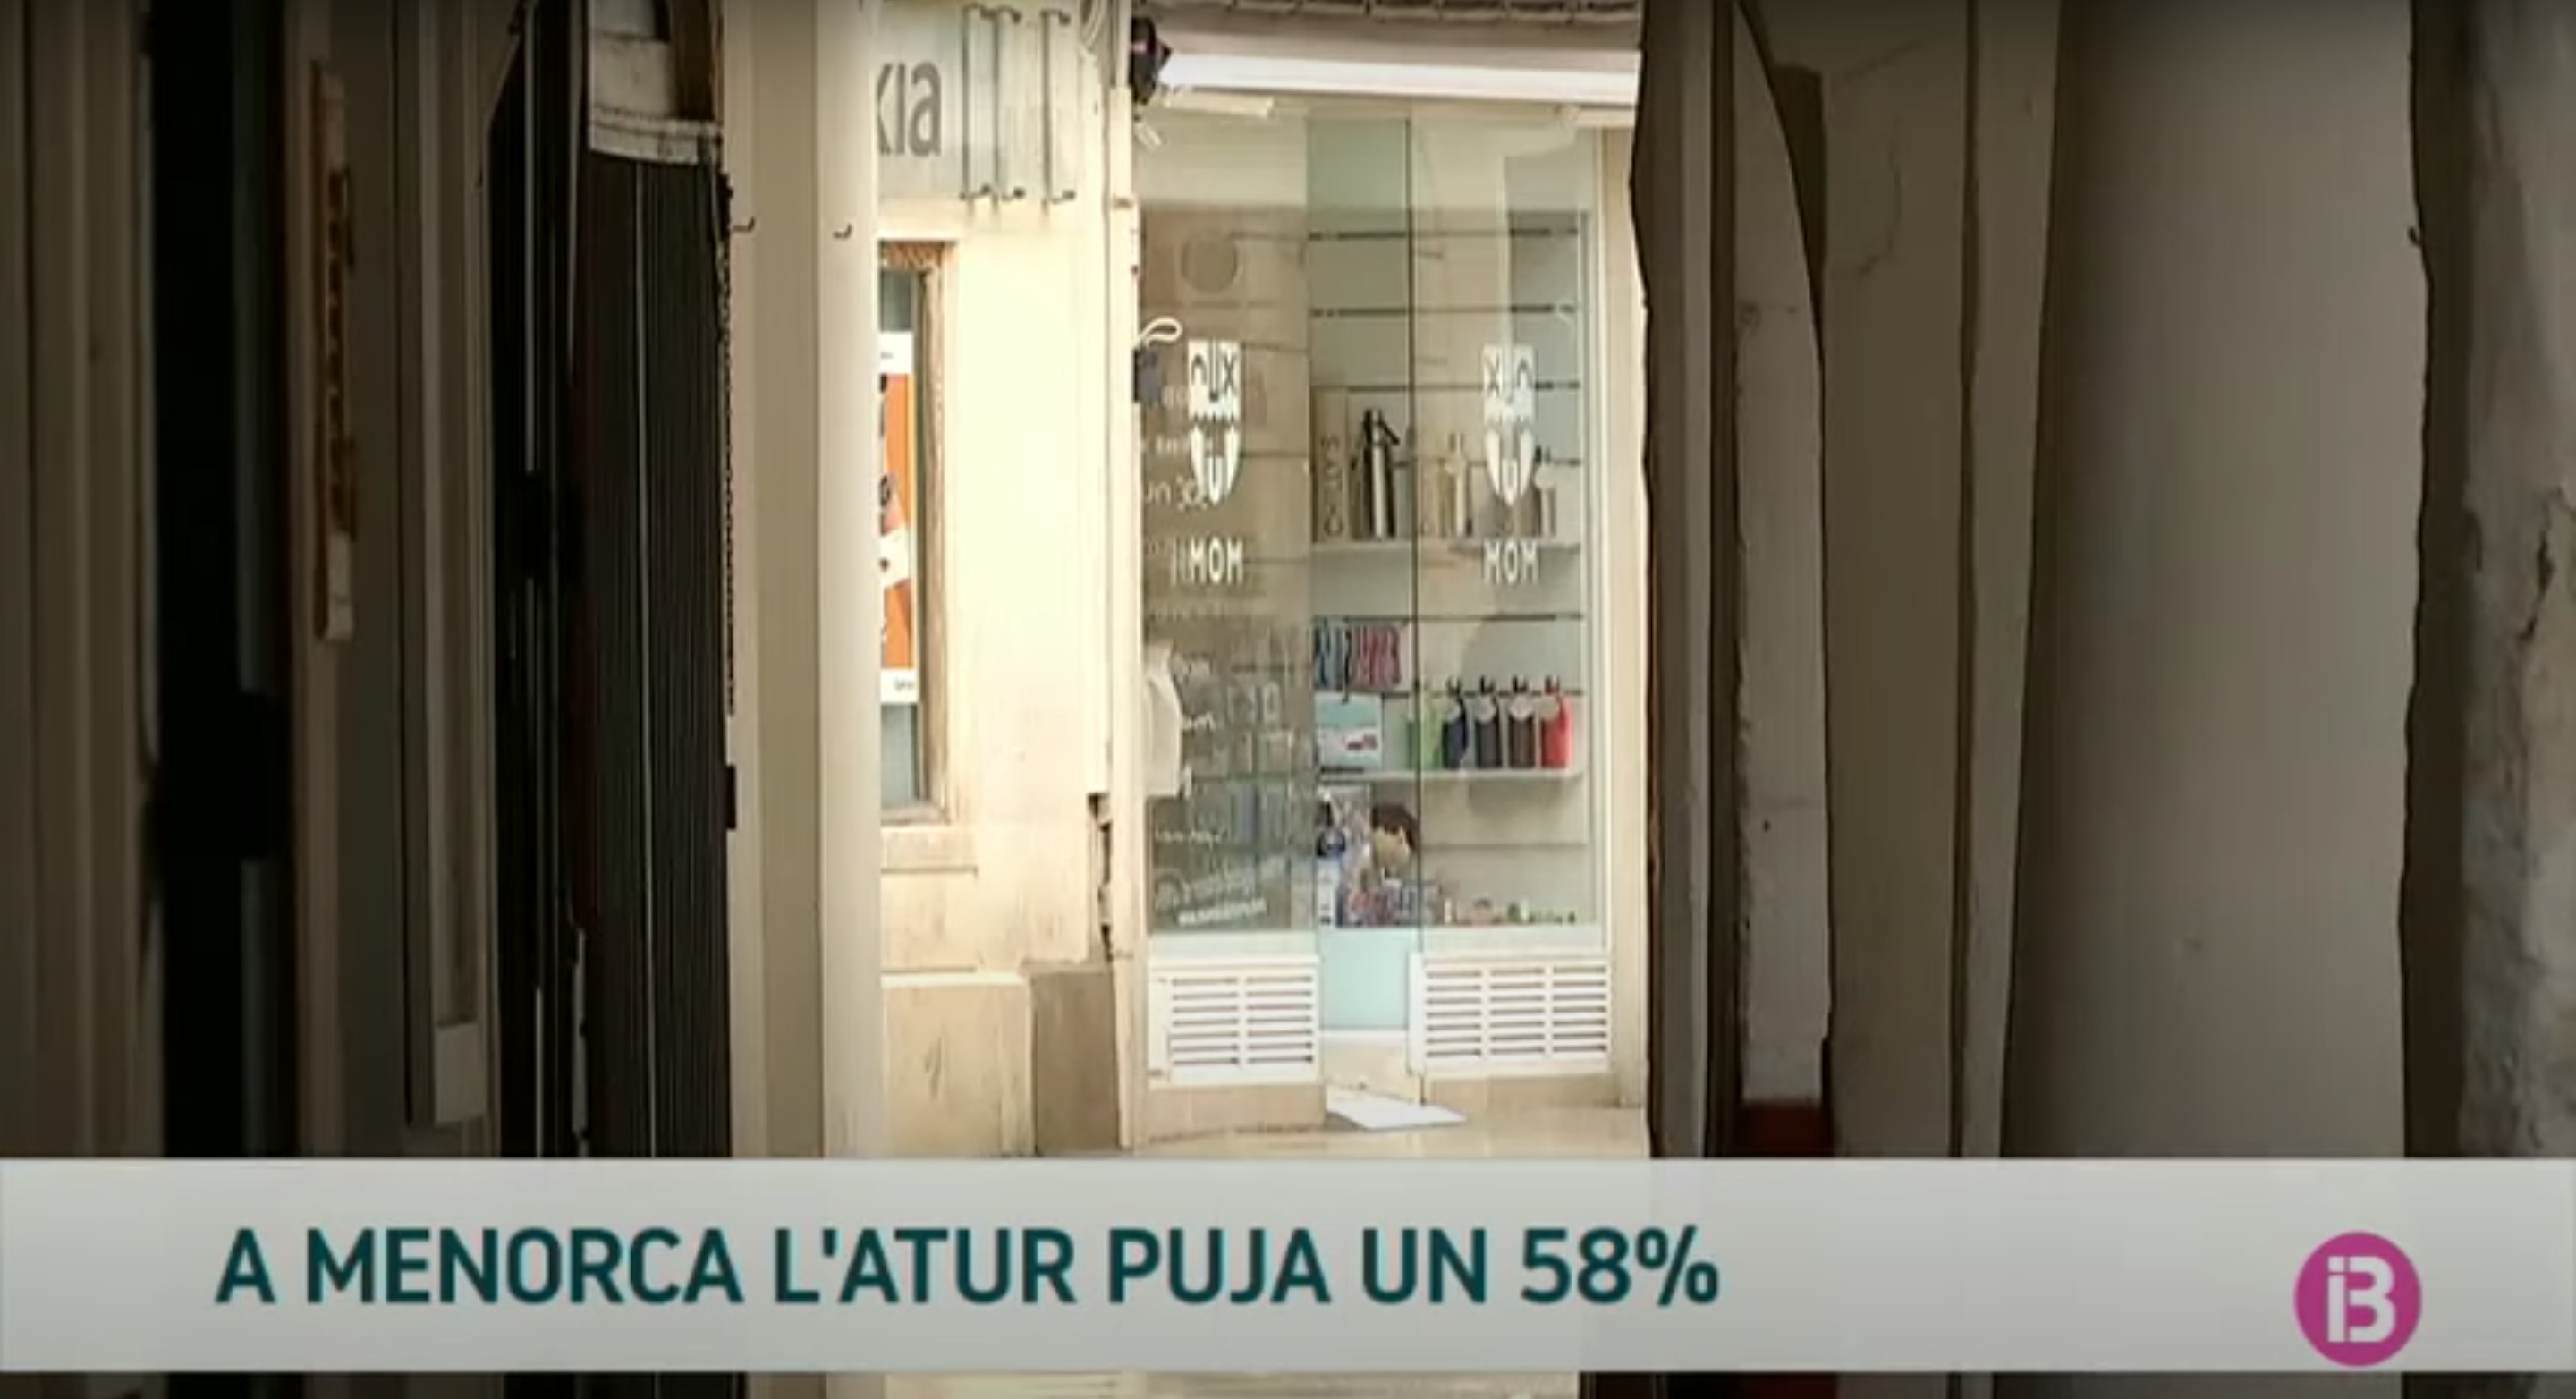 L%26apos%3Batur+puja+a+Menorca+un+58%2525+m%C3%A9s+que+a+l%26apos%3Babril+de+2019